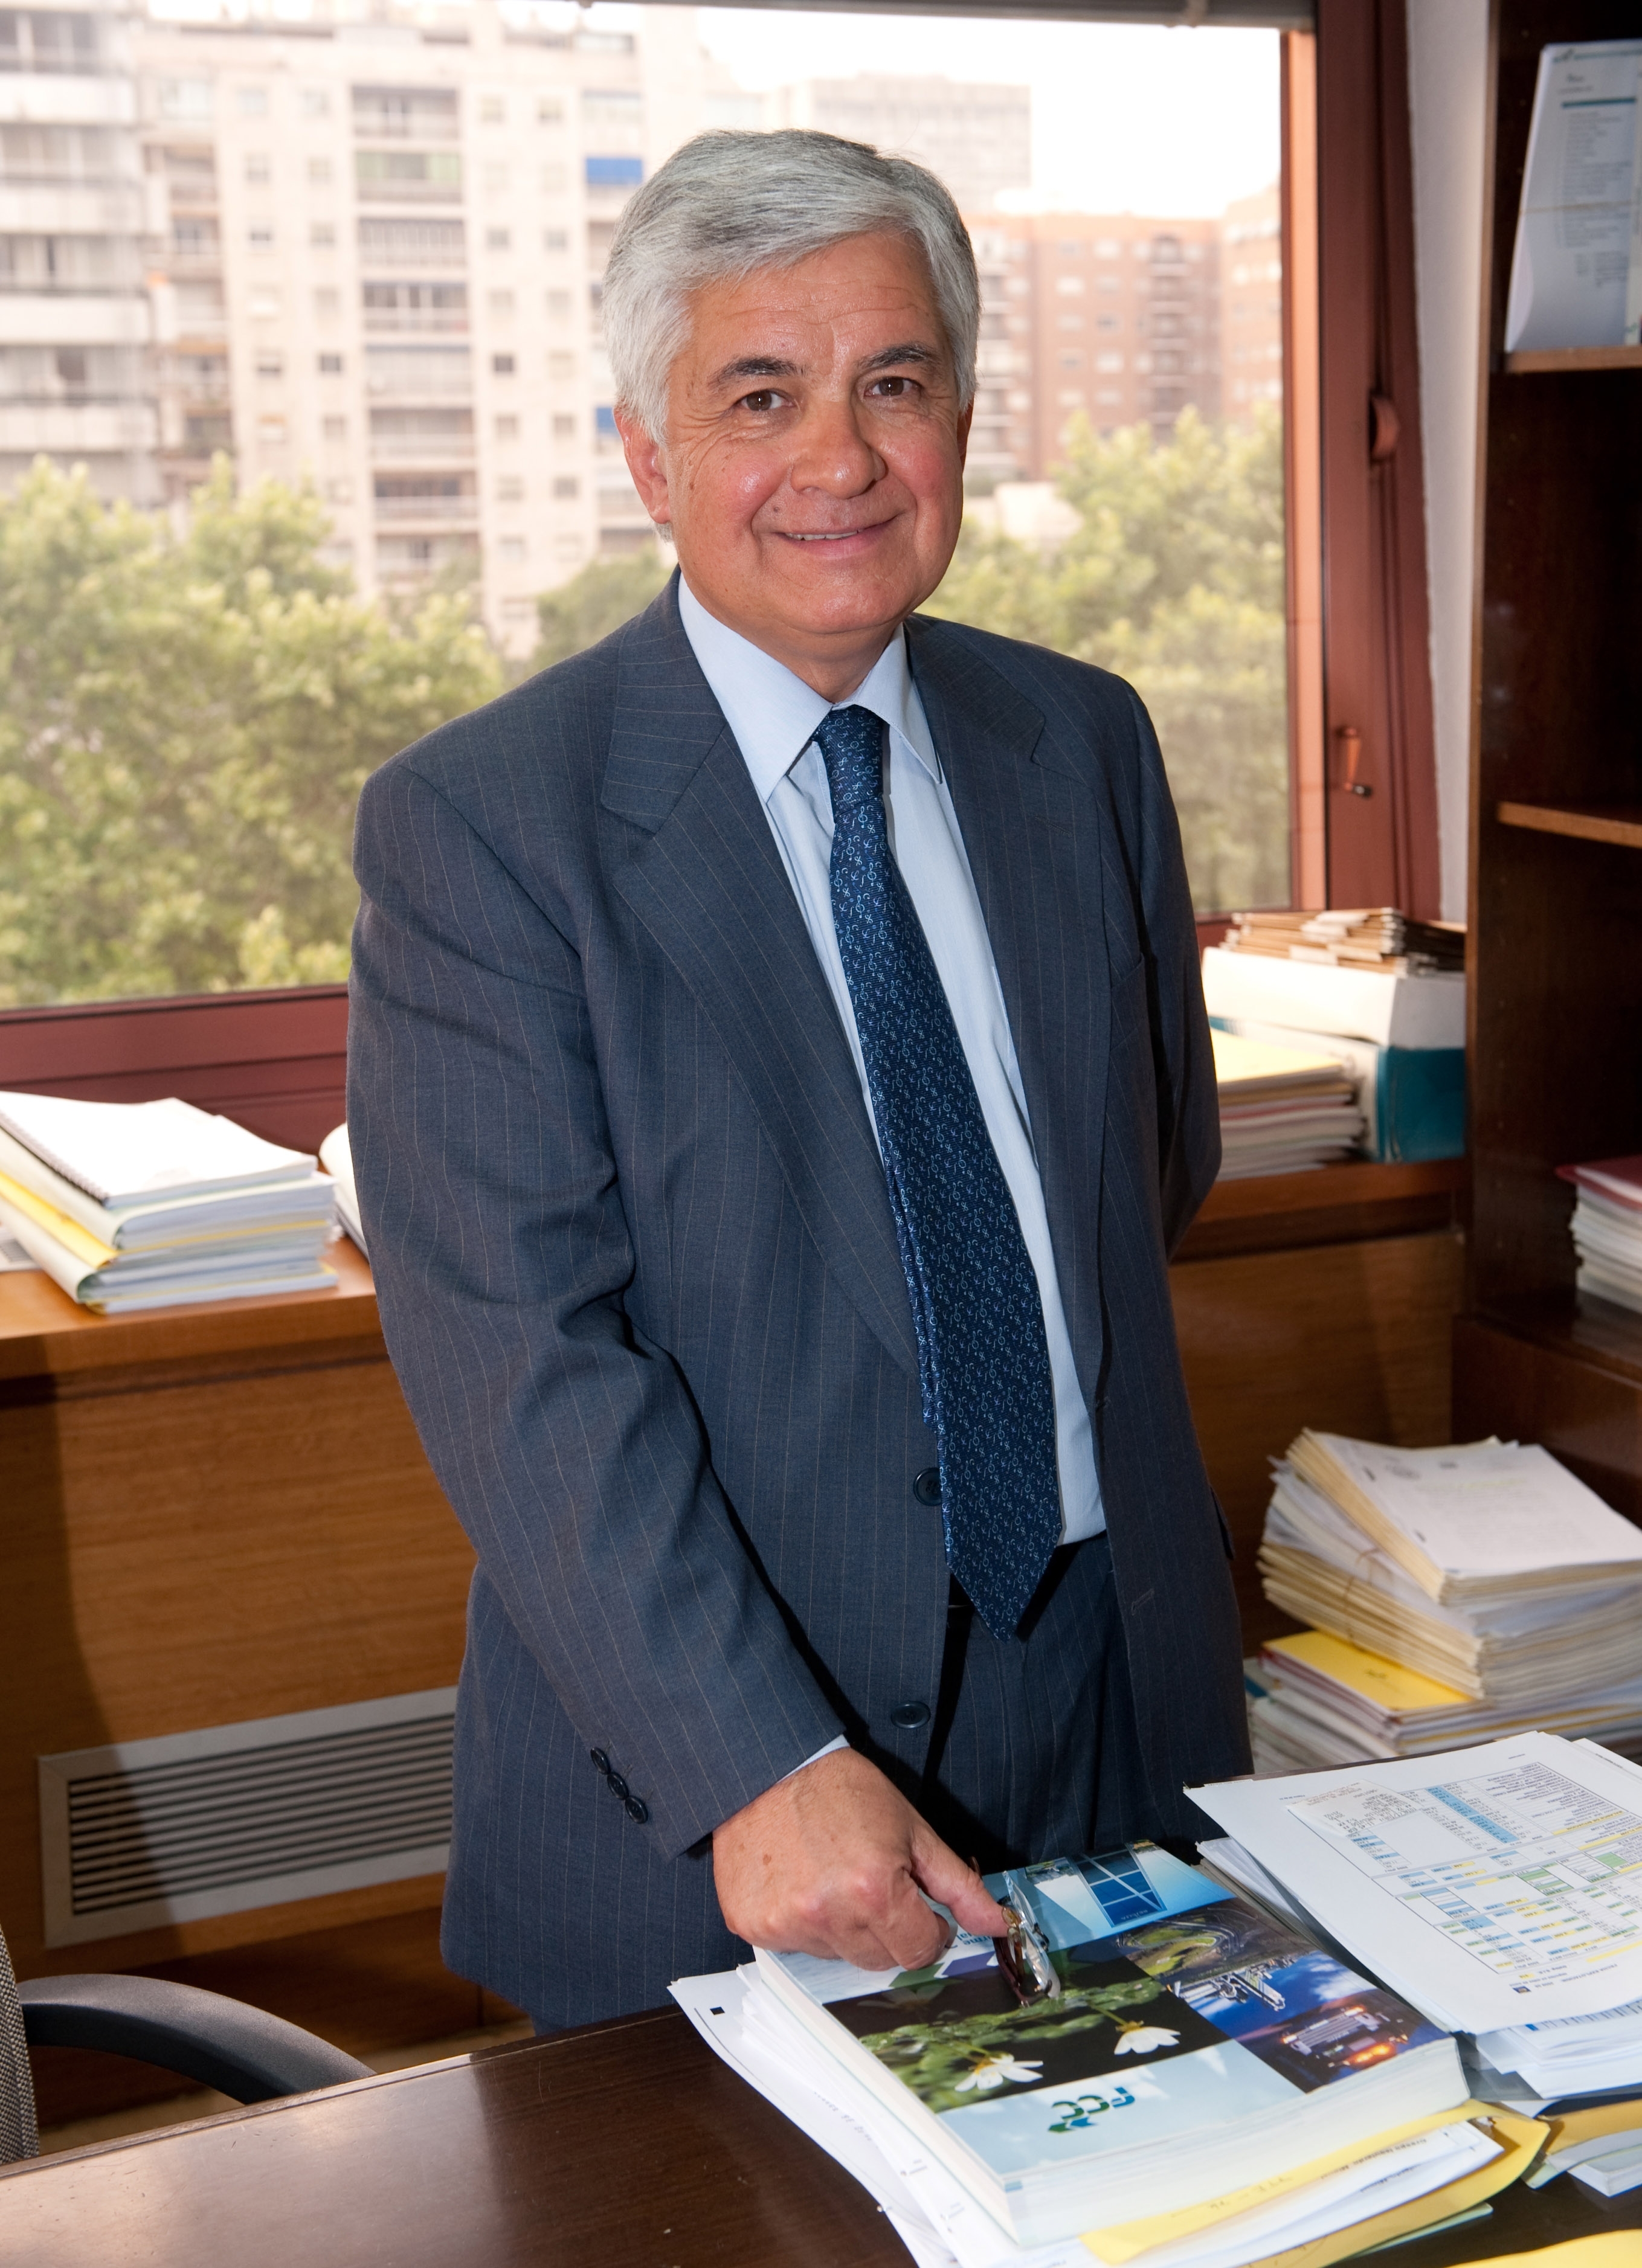 Avelino Acero, General Manager of FCC Construcción.